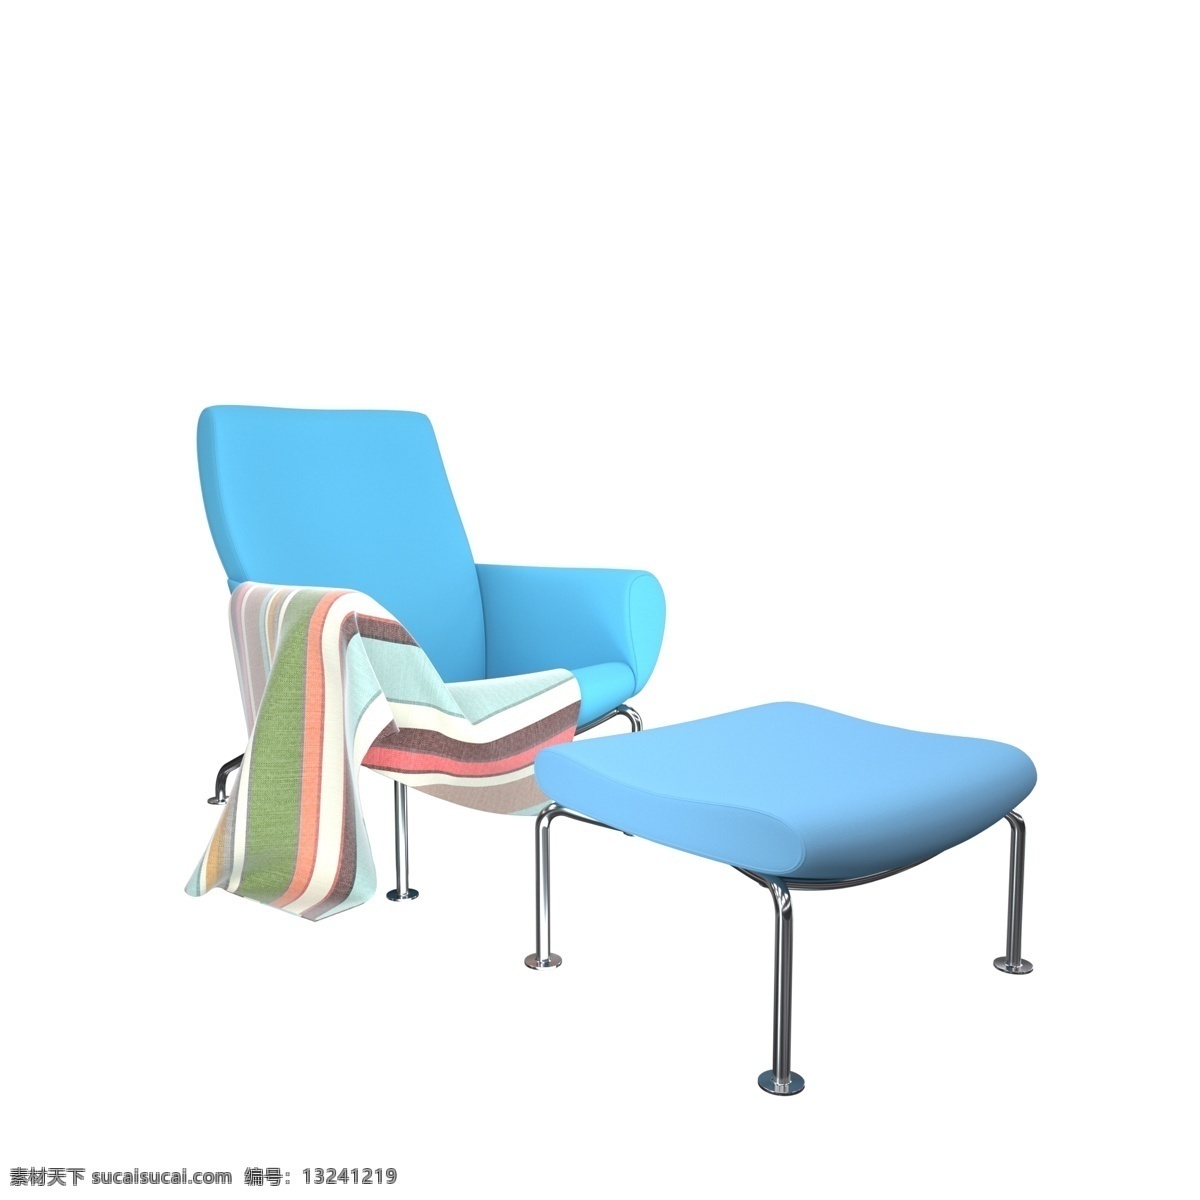 蓝色 午休 软垫 座椅 c4d 3d 写实 家居 家具 家居生活馆 蓝色软垫座椅 沙发 靠椅 午休椅 躺椅